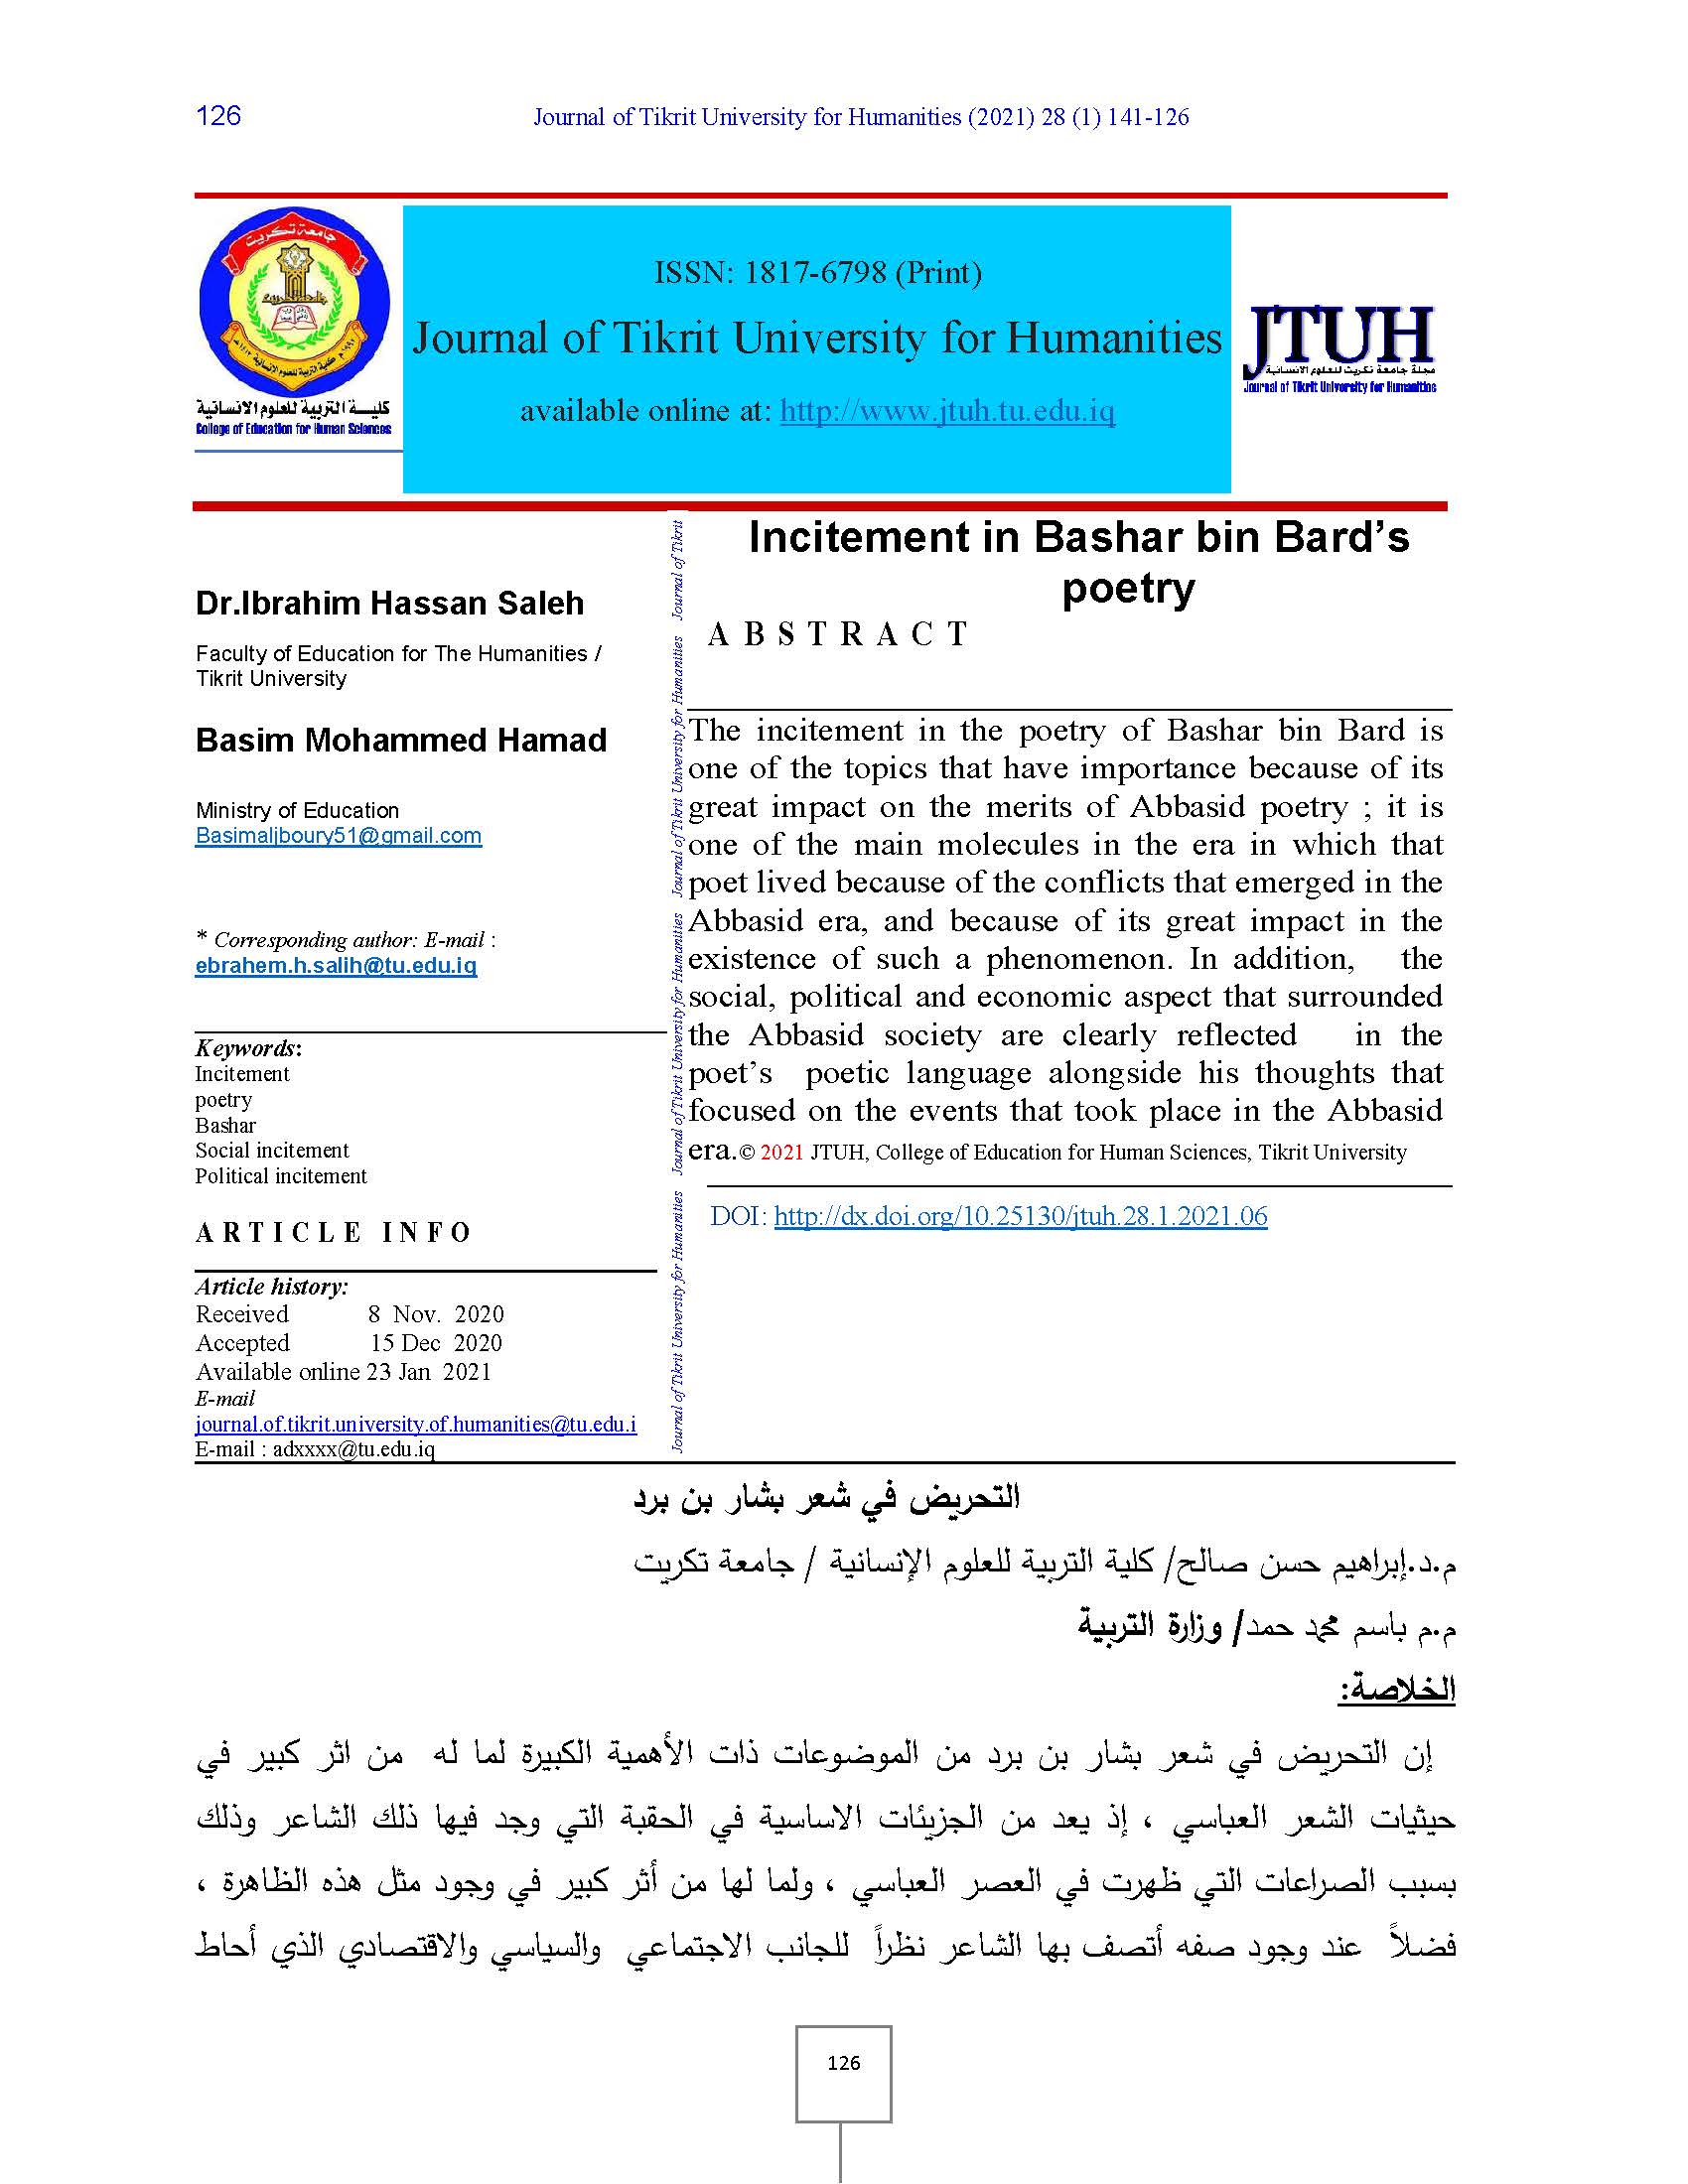 Vol. 28 No. 1 (2021): Vol. 28, No.1 | Journal of Tikrit University 